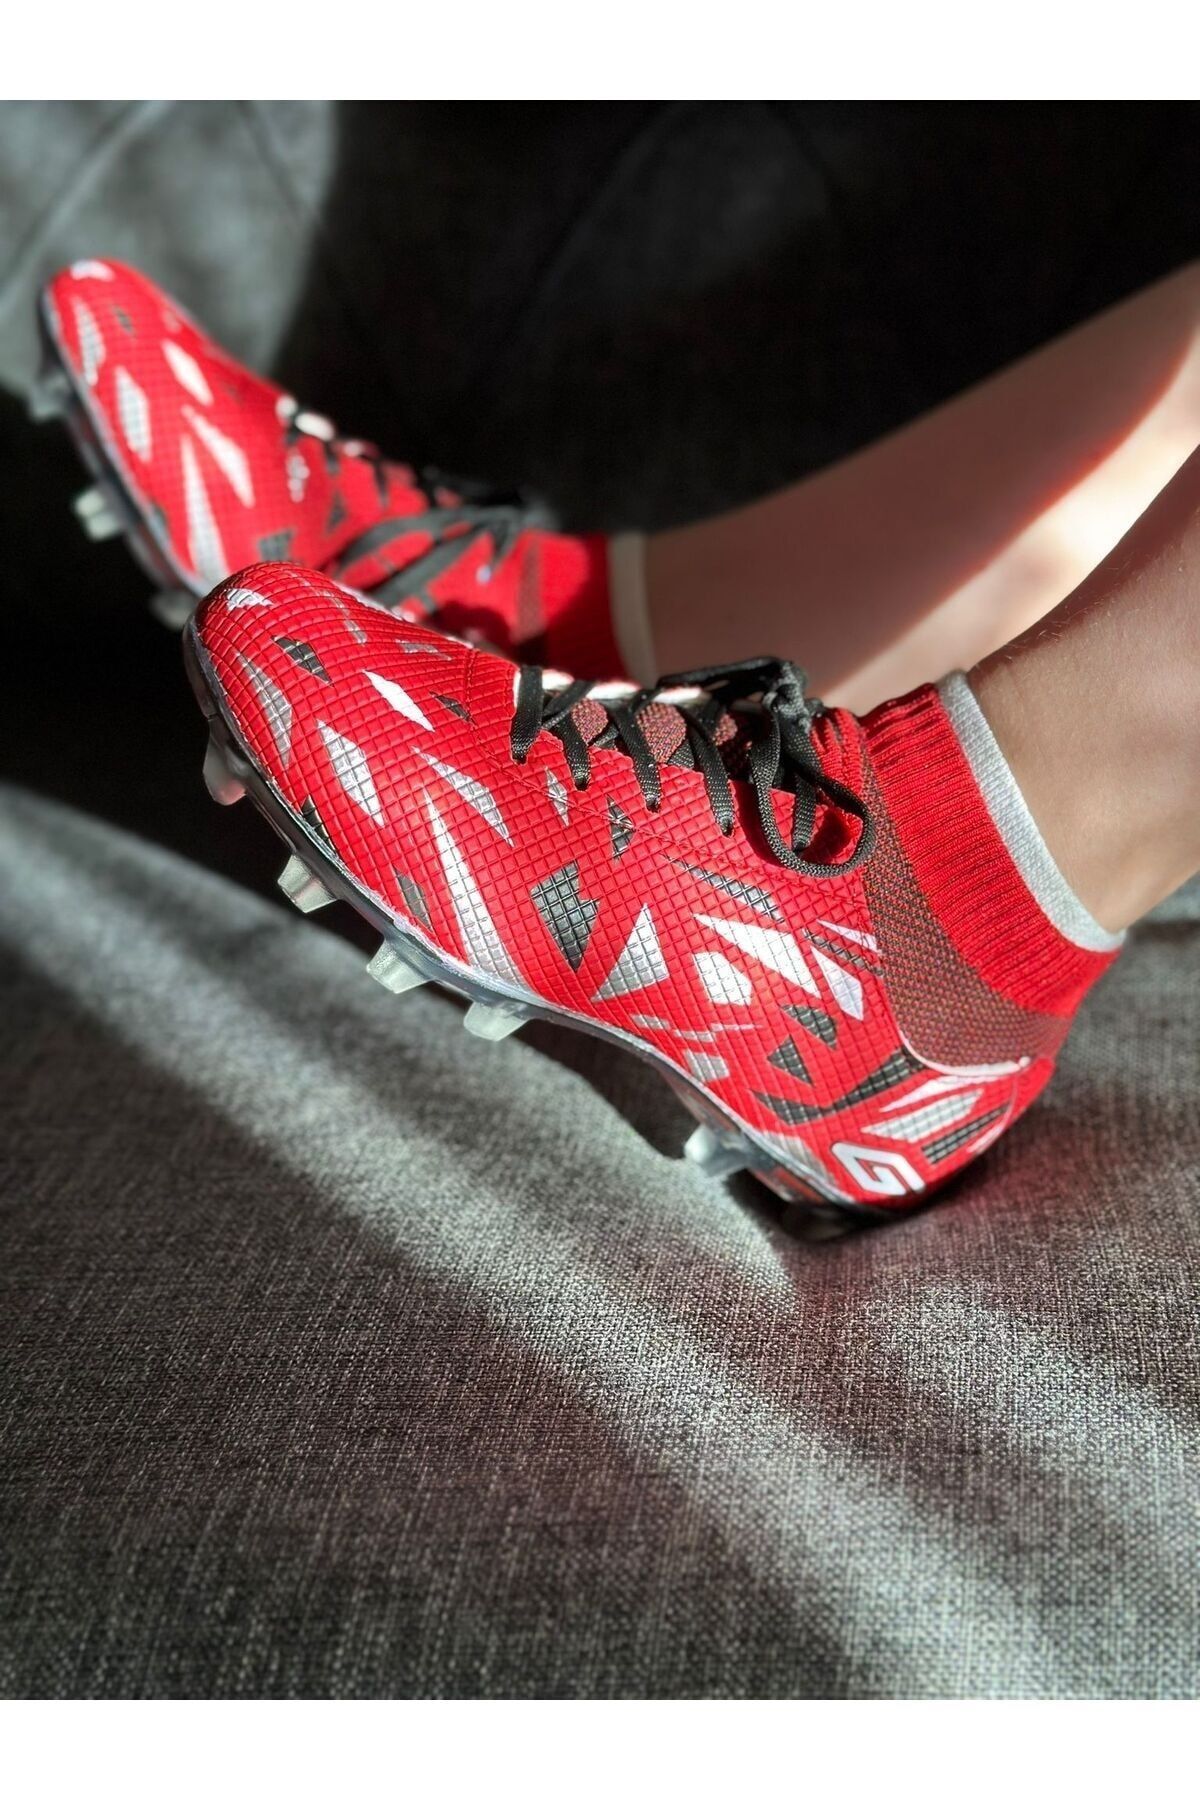 Amanal Erkek Çoraplı Dişli Bağcıklı Krampon Çocuk Halı Saha Futbol Spor Ayakkabısı